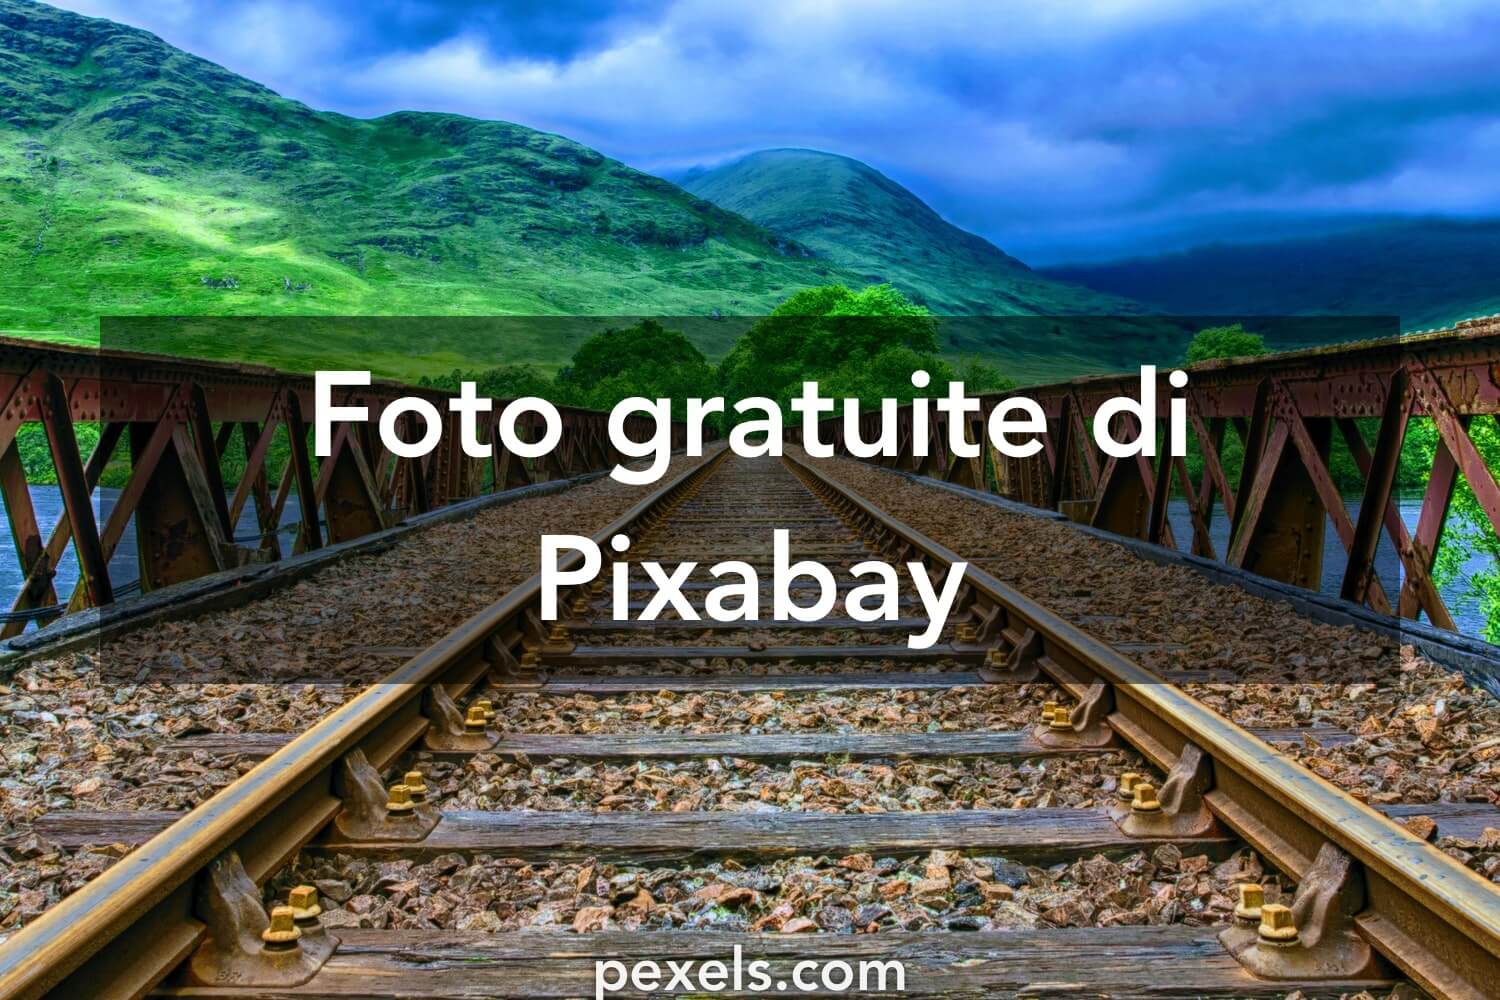 Pixabay cung cấp những tấm hình rất đa dạng